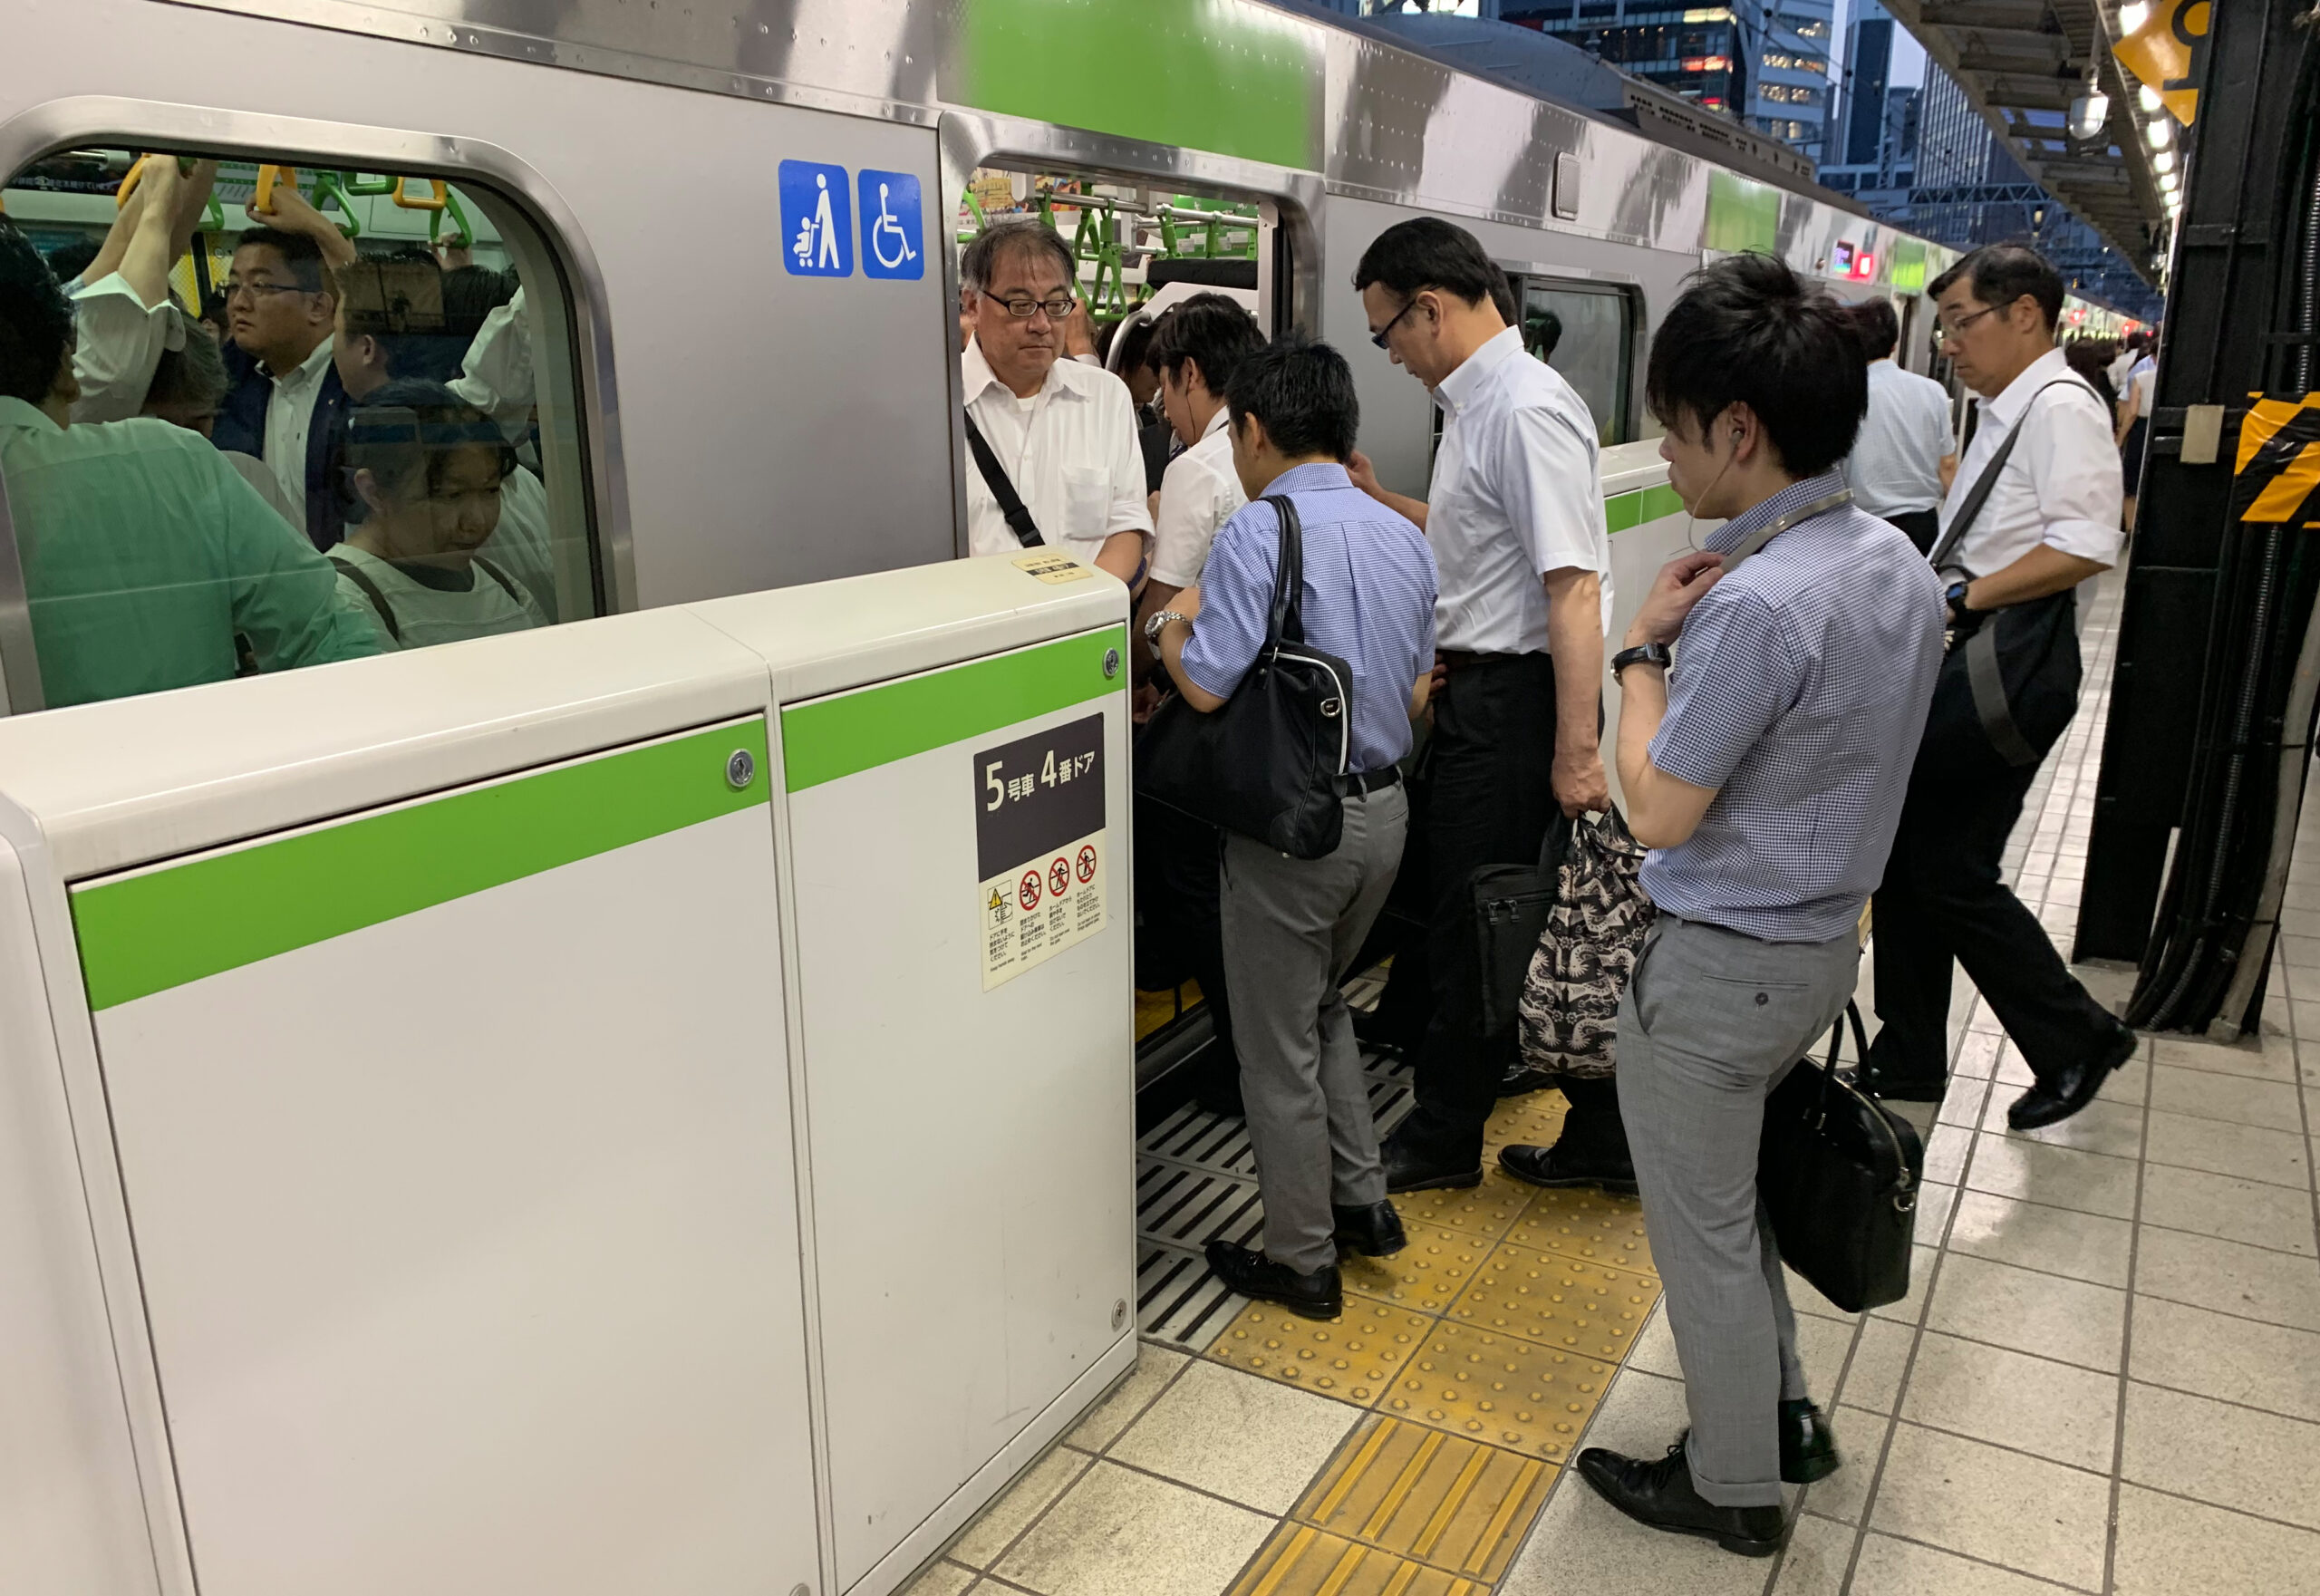 Menschen steigen in eine U-Bahn an einem japanischen Bahnhof. (Symbolbild)